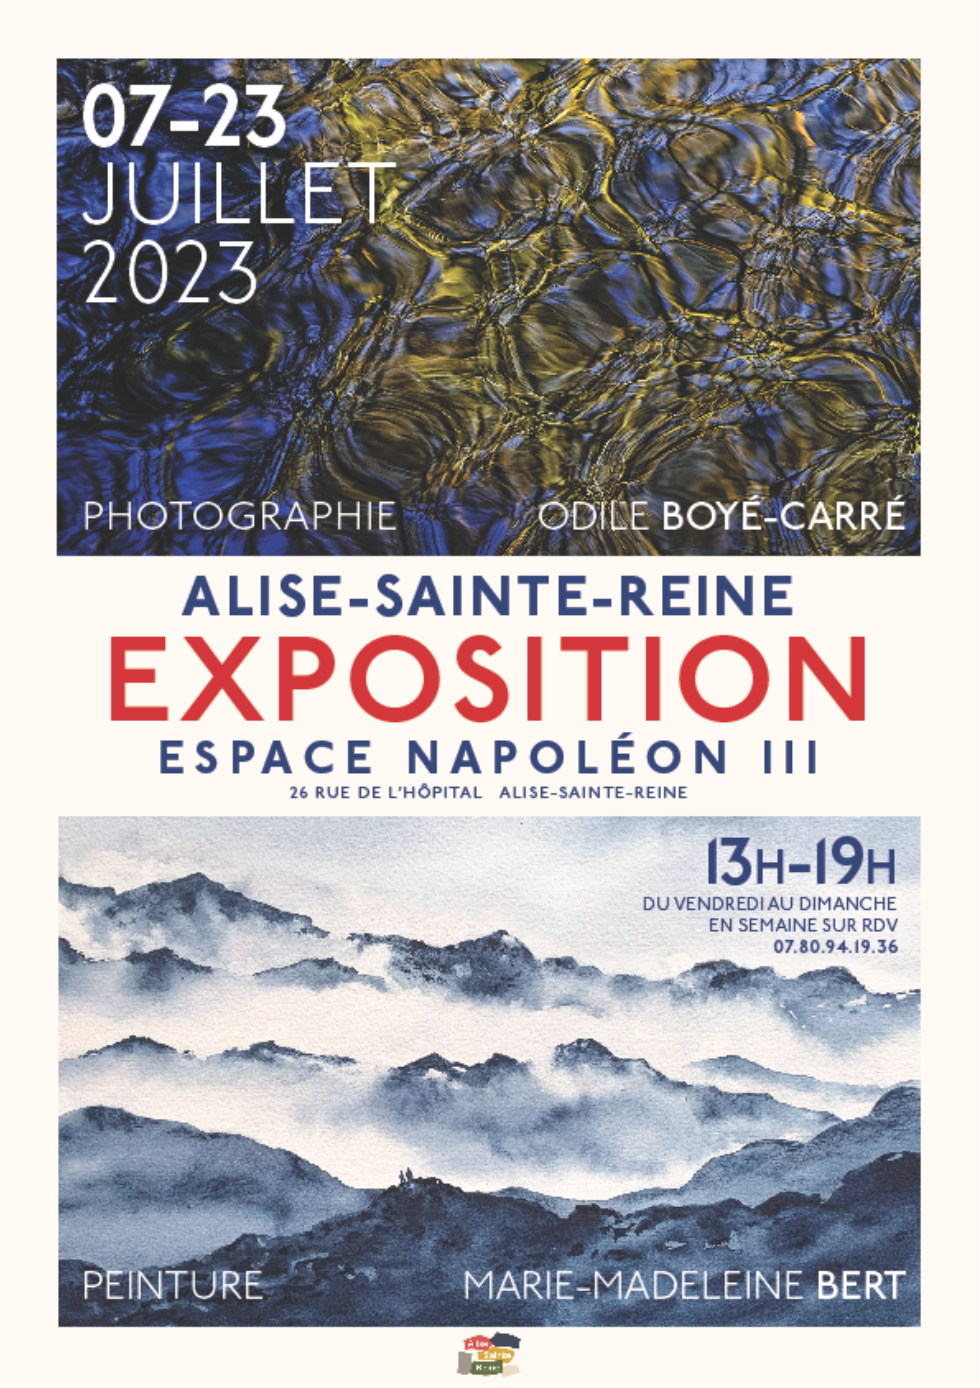 Exposition Juillet 2023 Alise